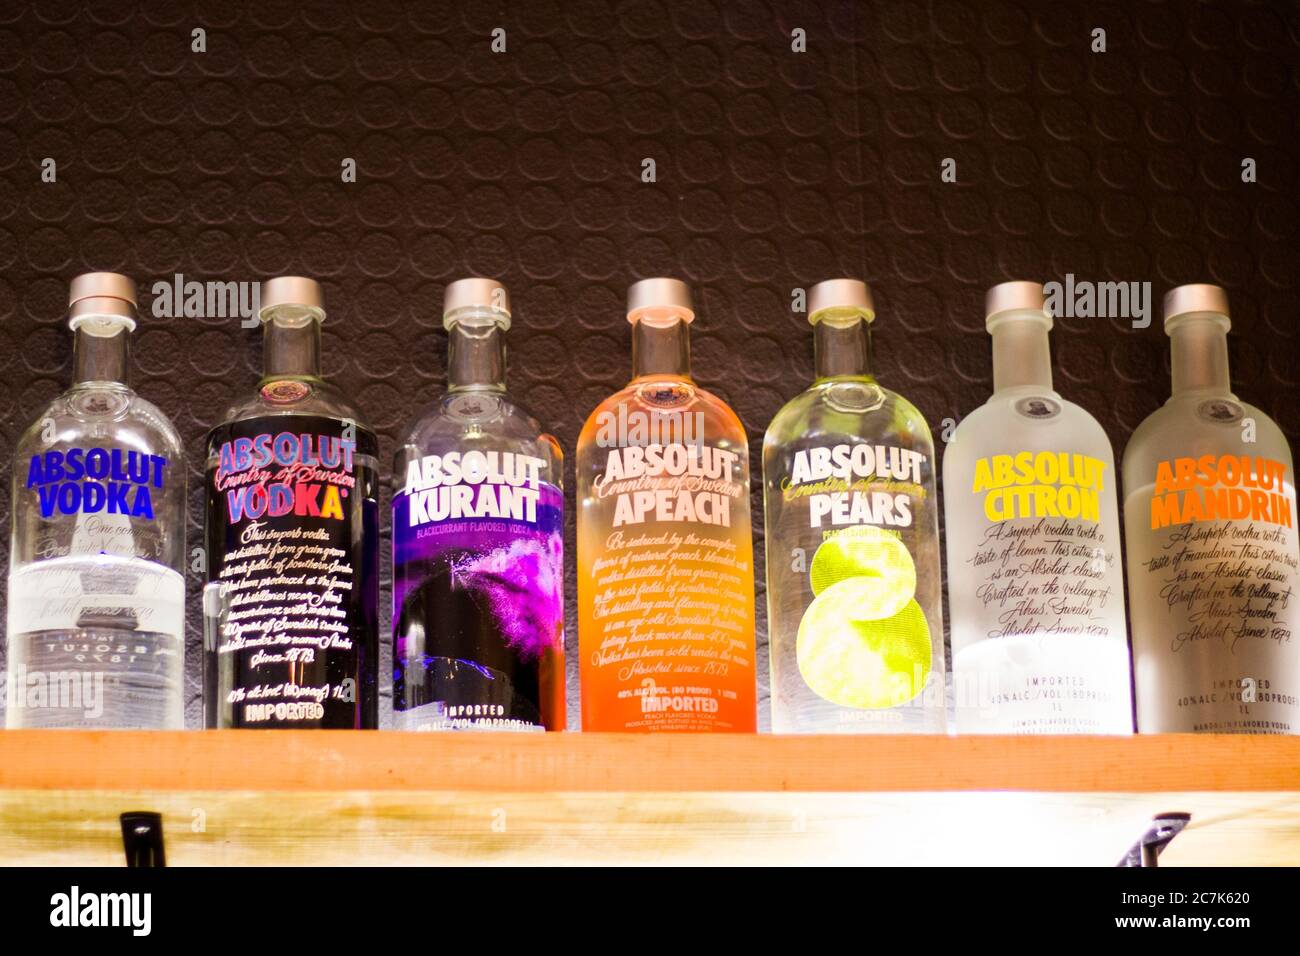 TIFLIS, GEORGIEN - 13. APRIL 2018: Absolut Vodka Flasche auf dem Barregal.  Bunte Flaschen, Zitrone, Vanille, Klassiker und andere Wodka Aroma  Stockfotografie - Alamy